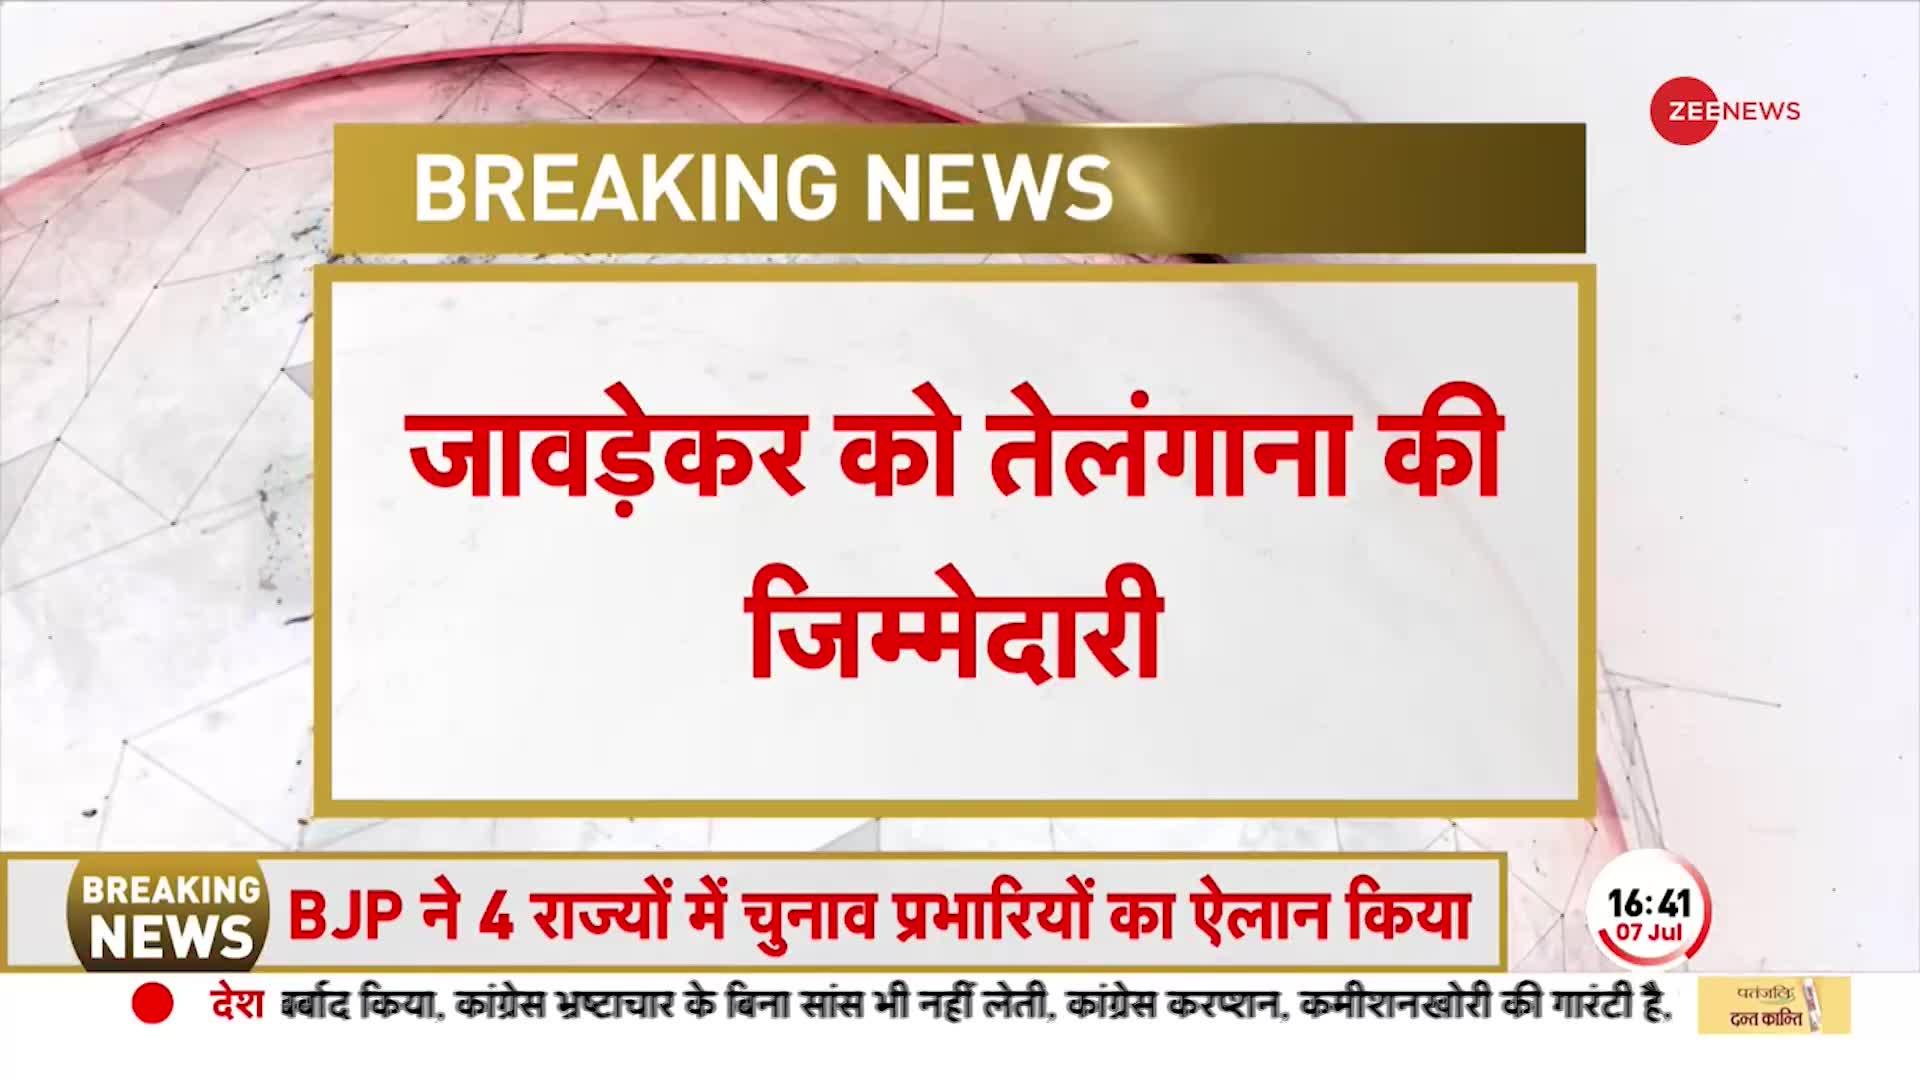 Breaking: बीजेपी ने मध्य प्रदेश, छत्तीसगढ़ समेत 4 राज्यों के चुनाव प्रभारियों का ऐलान किया